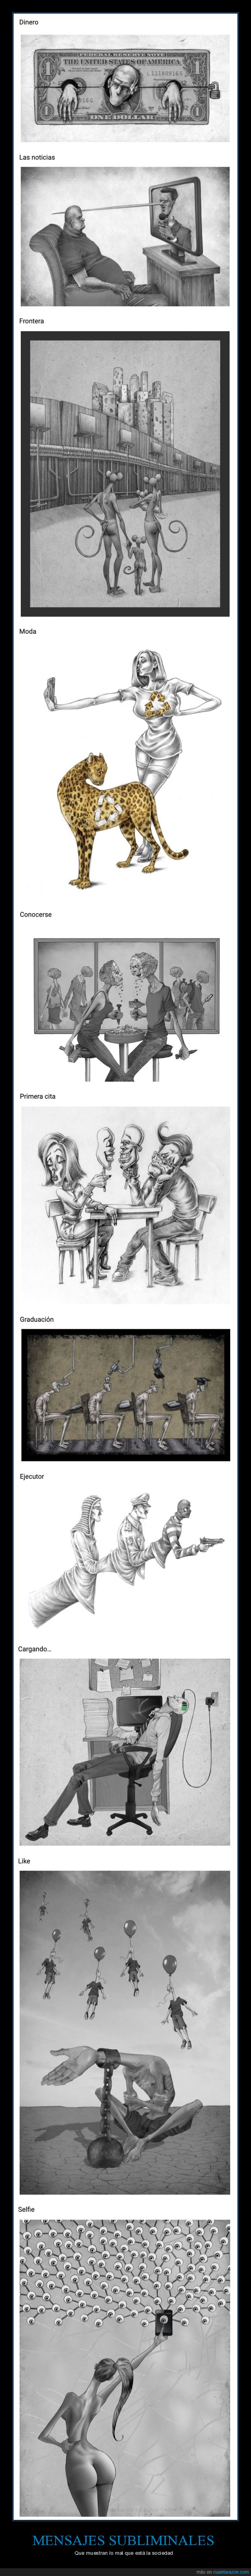 ilustraciones,sociedad